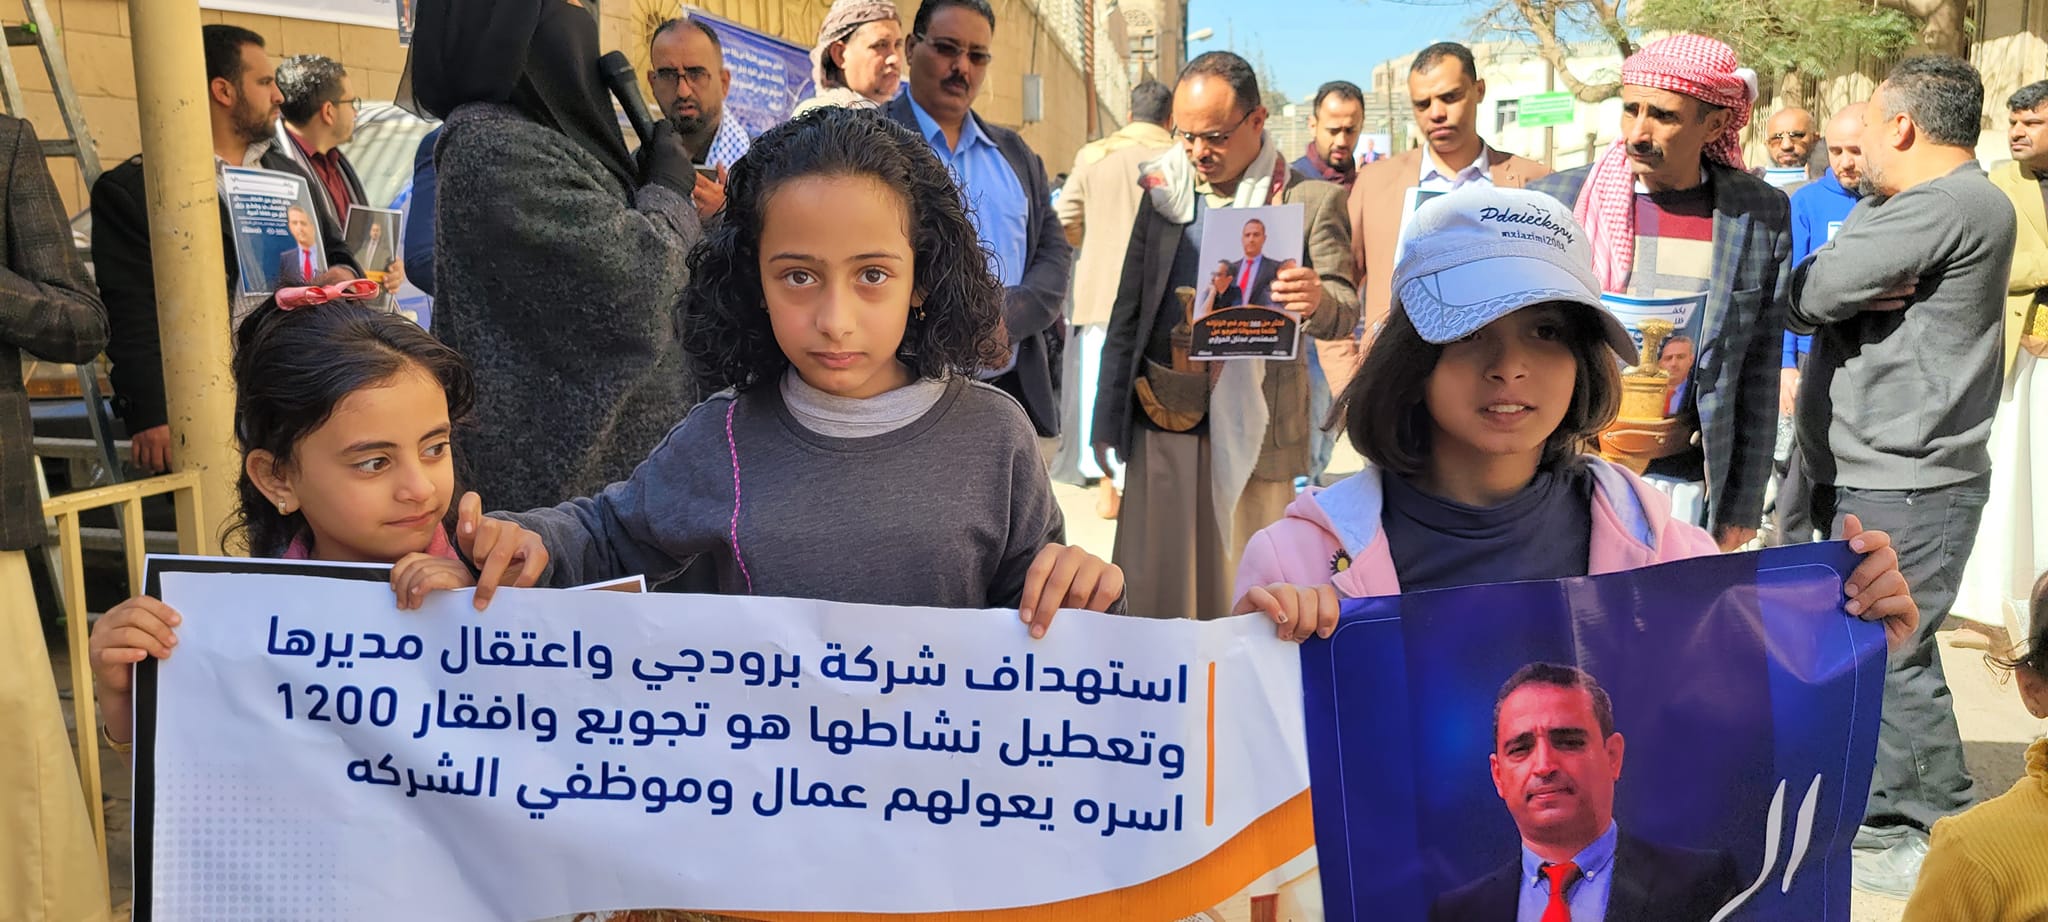 صنعاء.. وقفة احتجاجية لموظفي شركة "برودجي" في ذكرى اقتحامها وتغييب مديرها